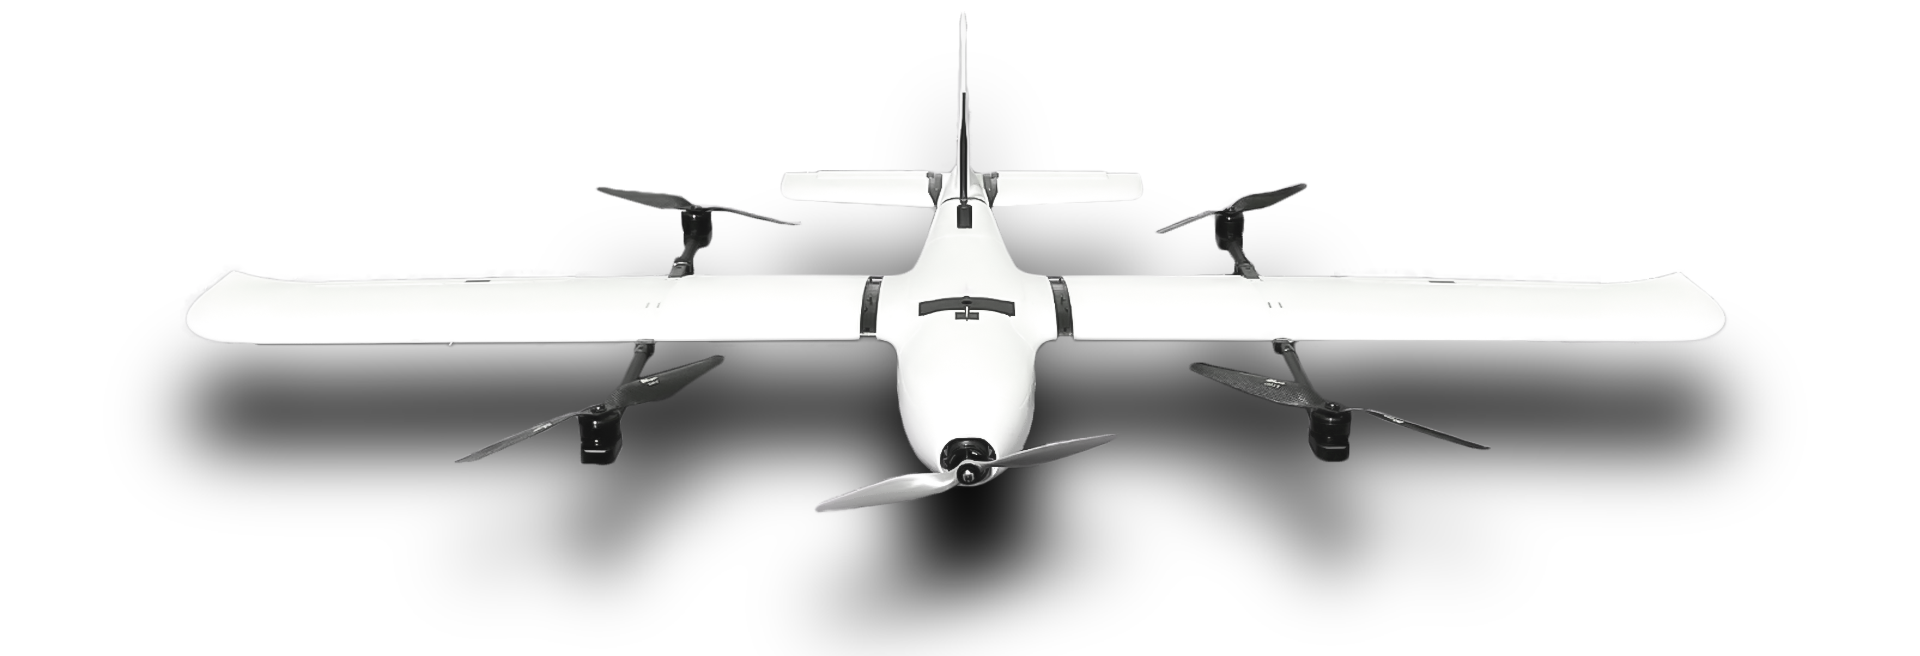 samoloty bezzałogowe Koliber 2.0 zdjęcie maszyny z przodu